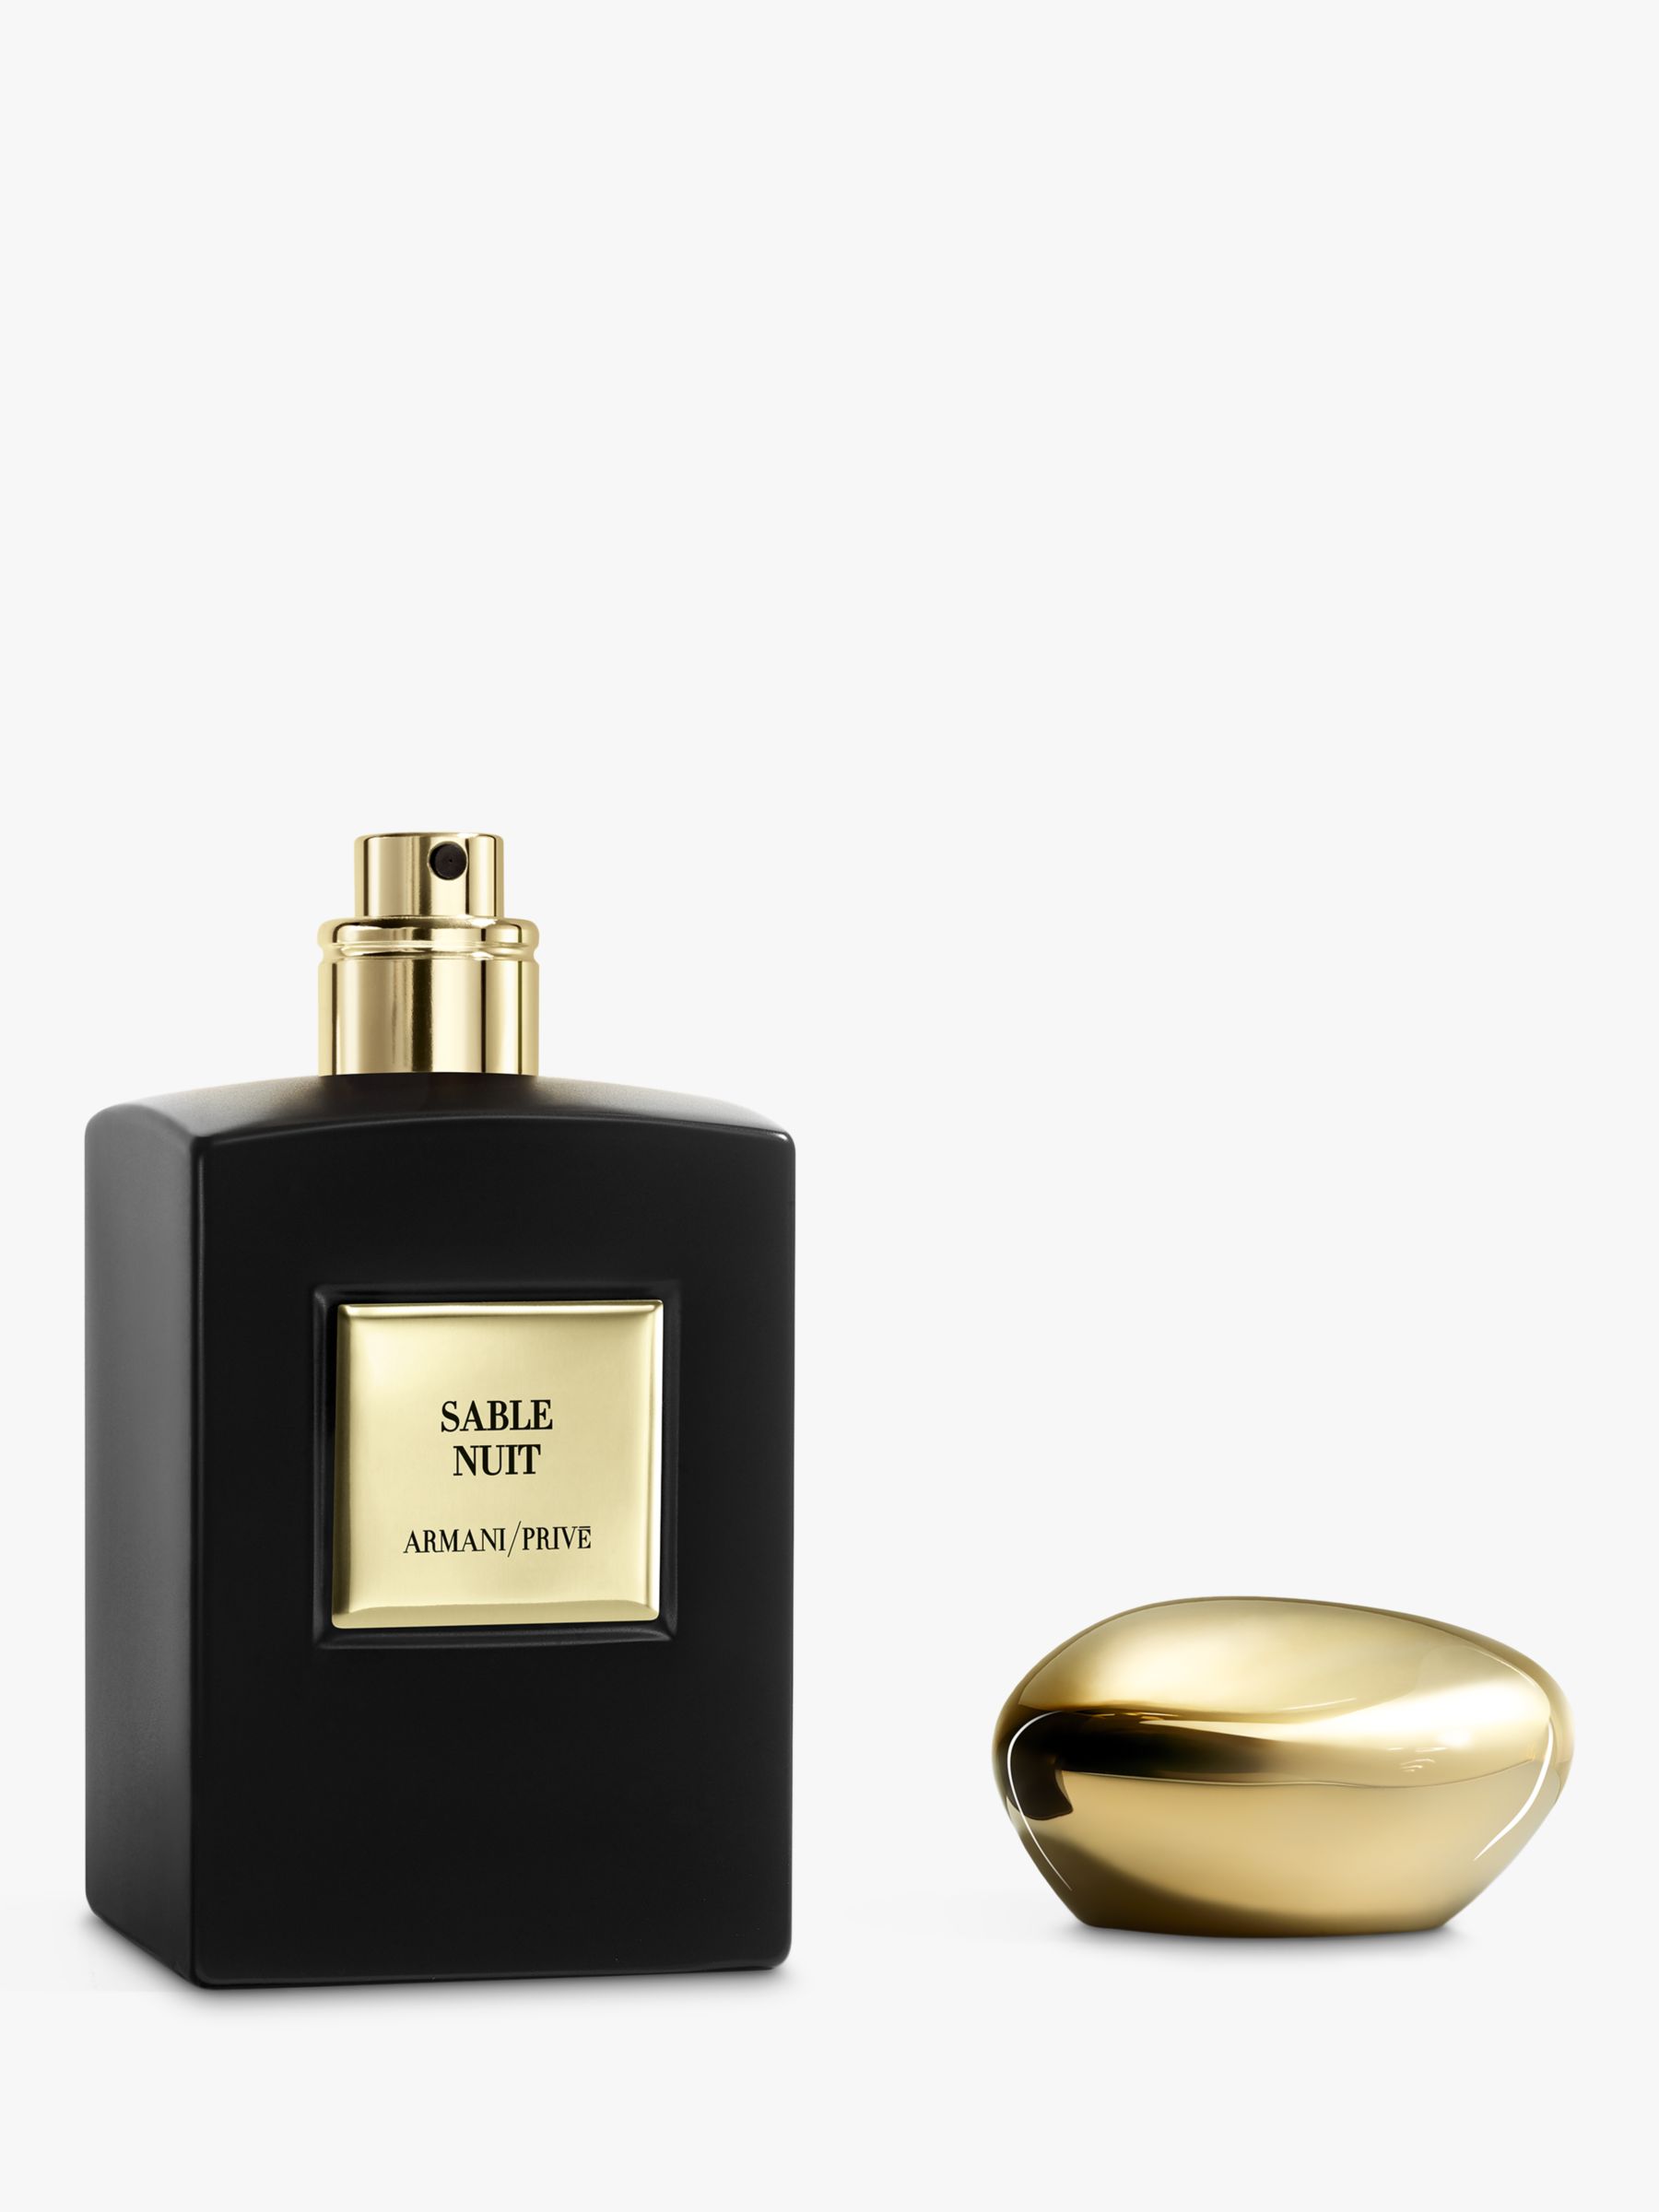 Giorgio Armani / Privé Sable Nuit Eau de Parfum Intense, 100ml at John  Lewis & Partners